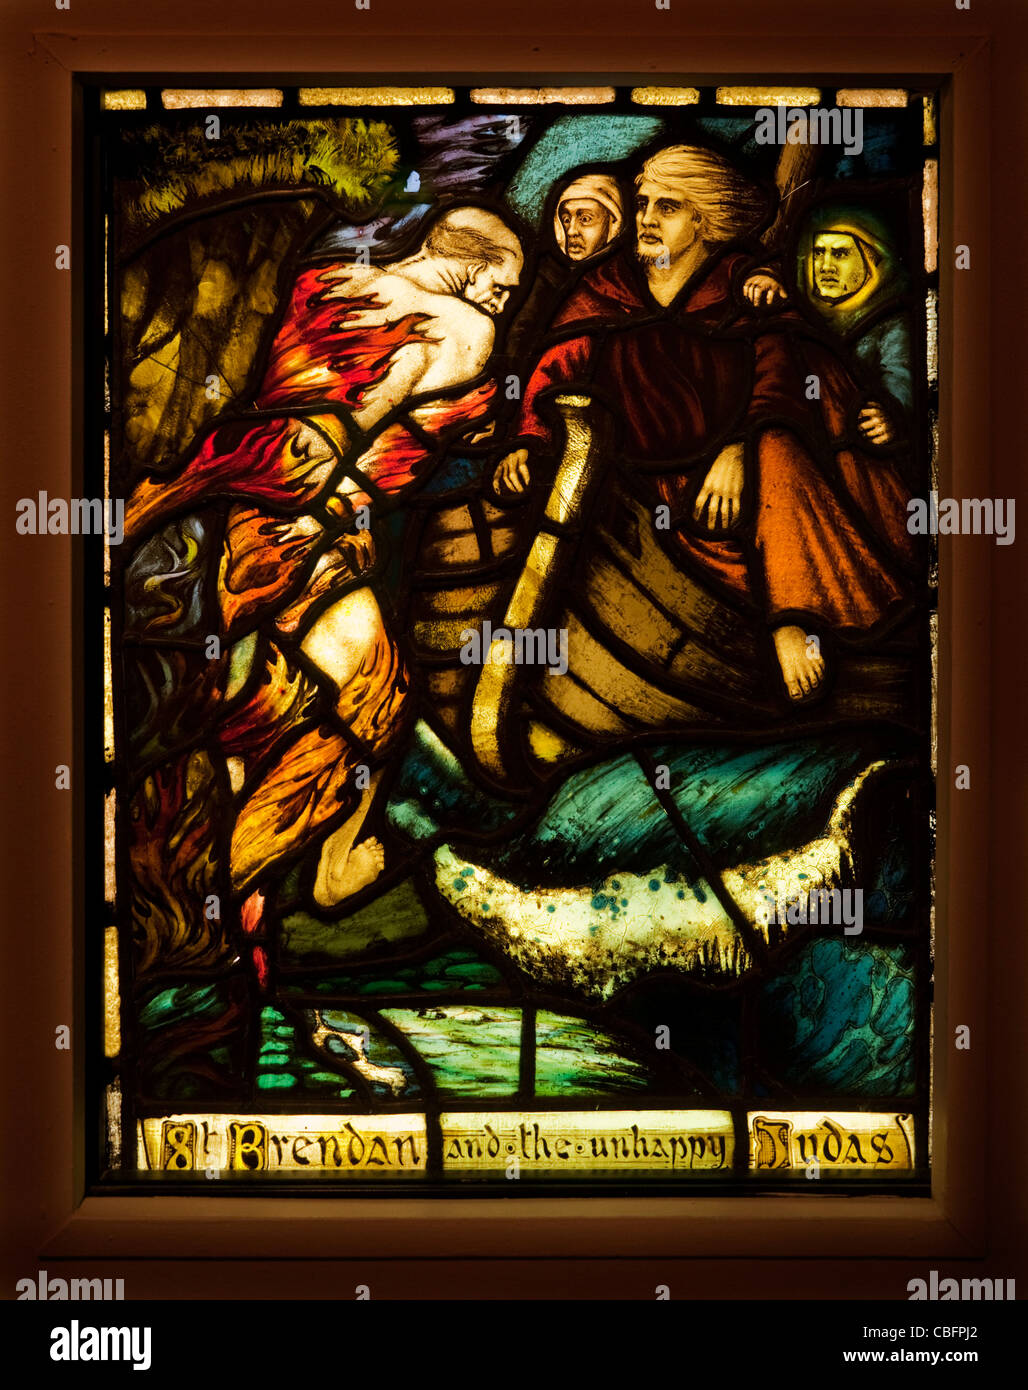 St. Brendan und Judas, A Harry Clarke Glasmalerei, die Crawford Municipal Art Gallery, Cork City, Irland Stockfoto